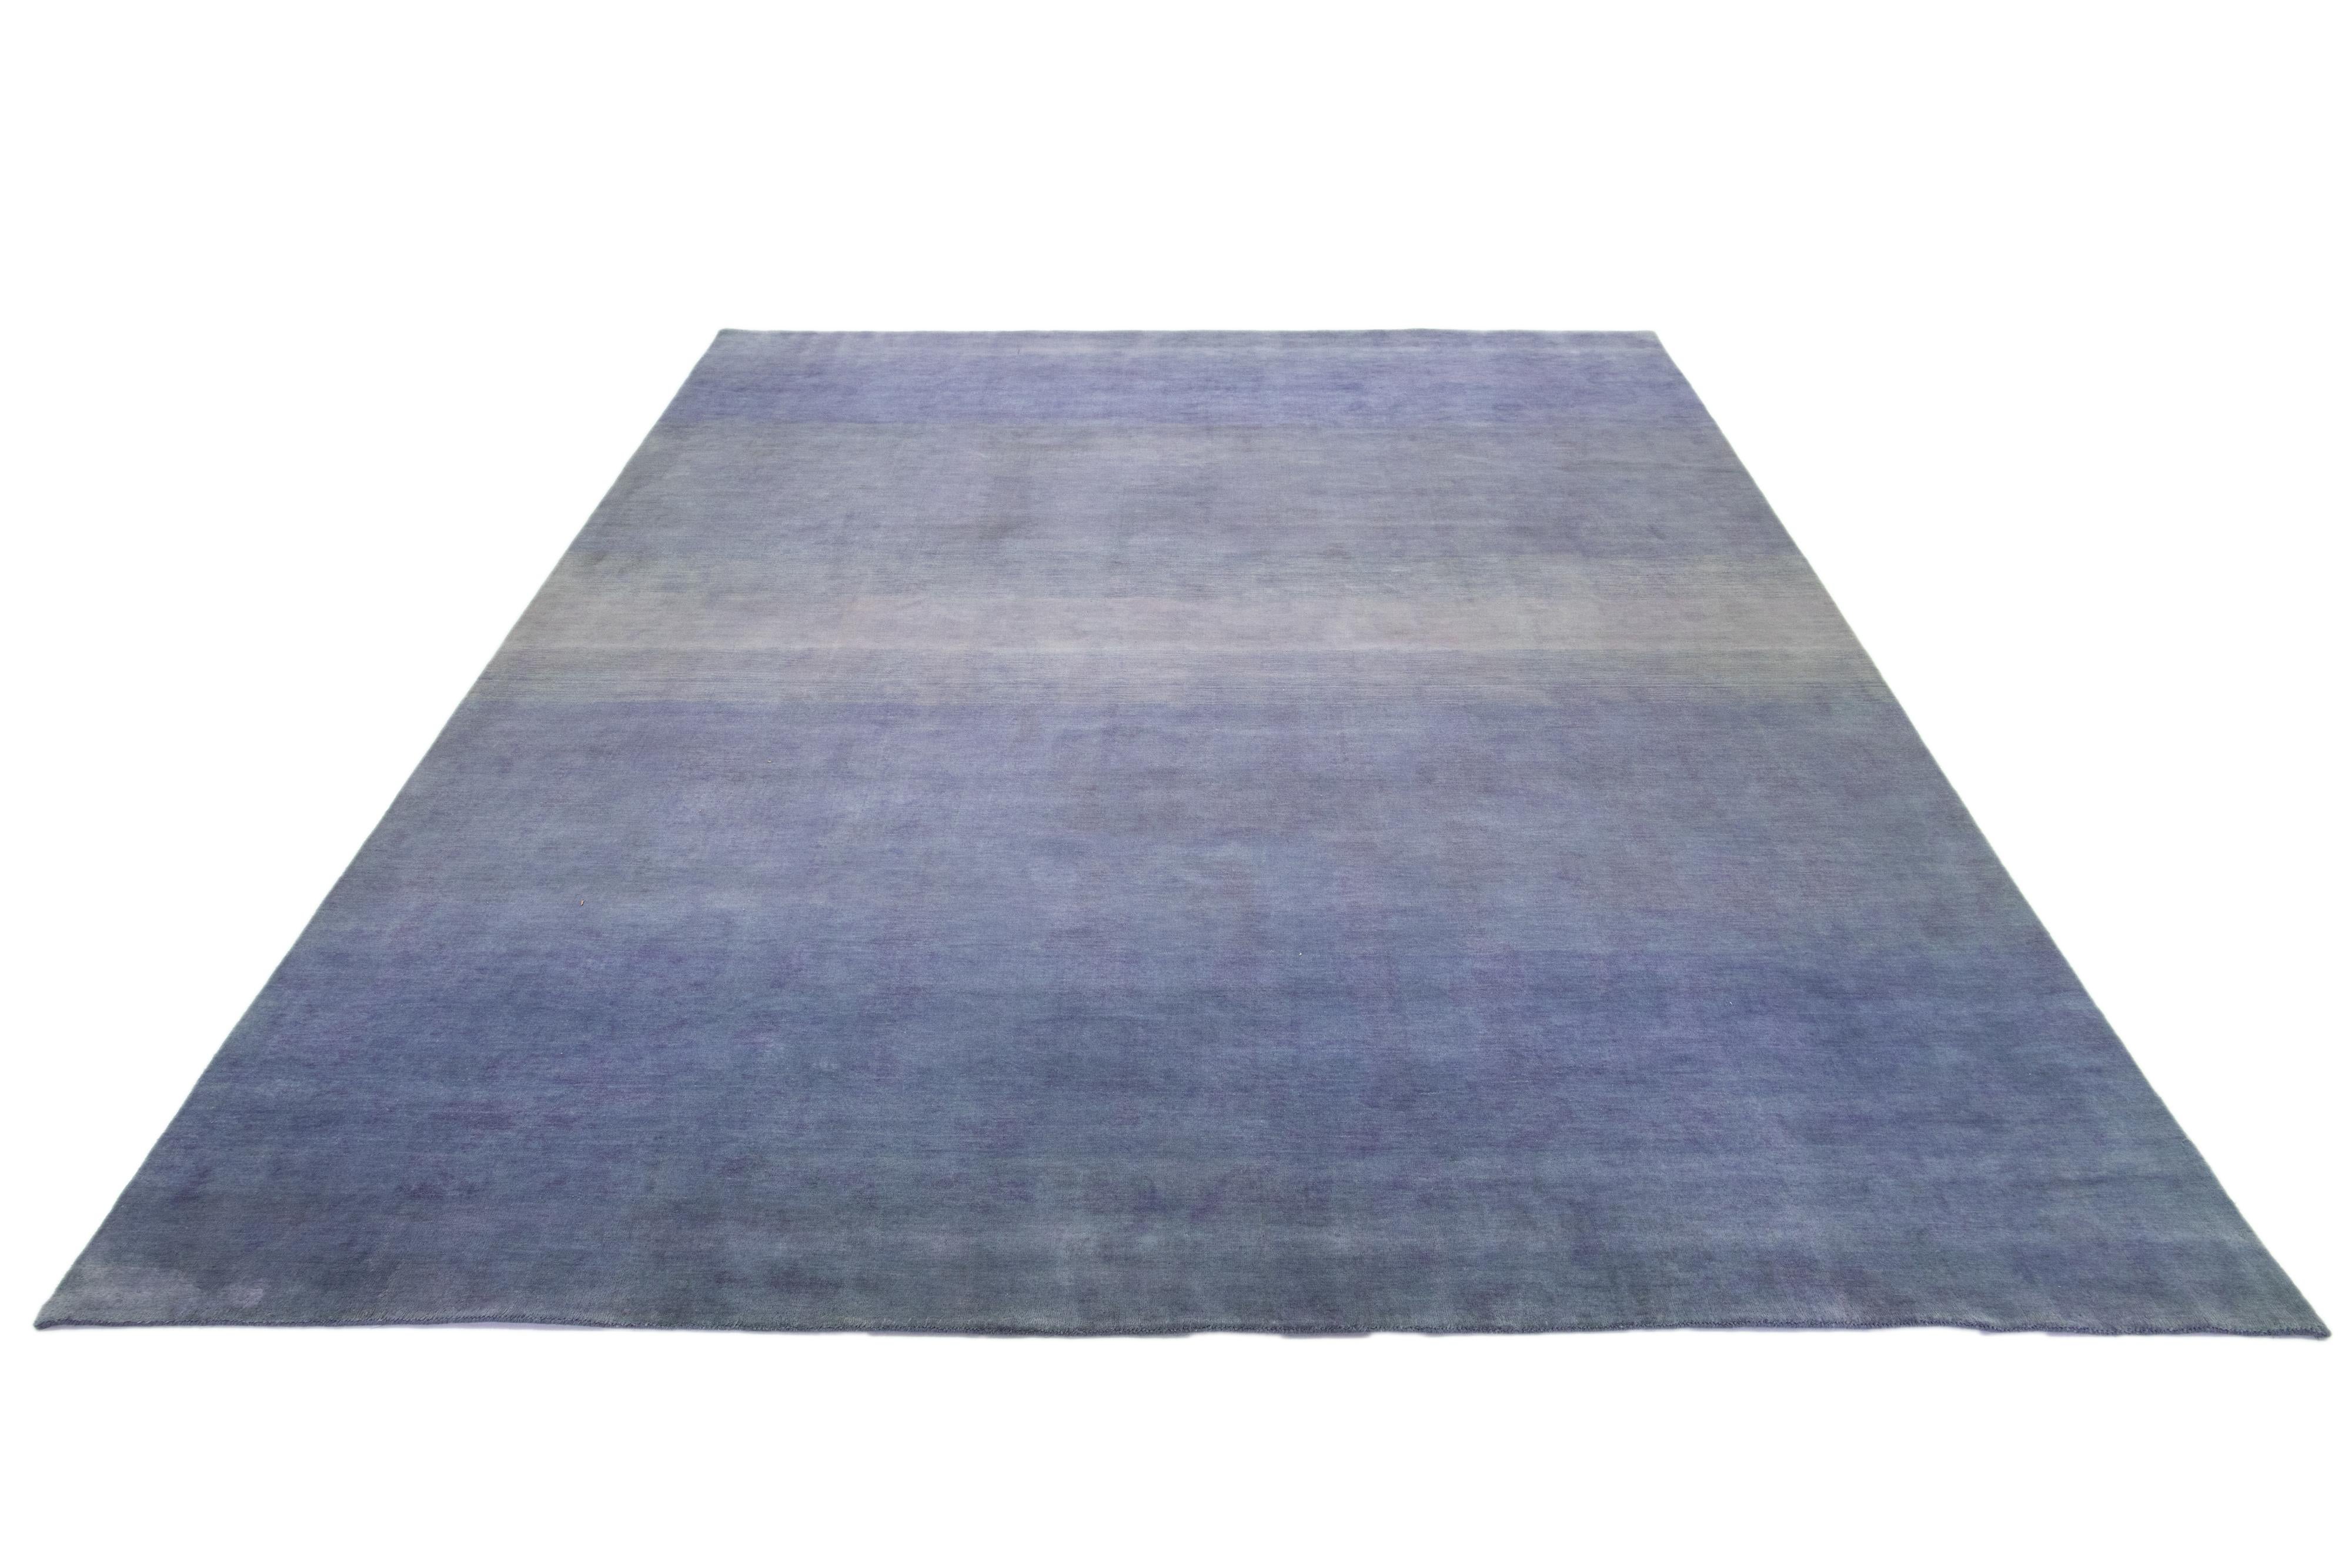 Ce tapis Gabbeh moderne est tissé à la main avec un motif minimaliste contemporain. La base bleue est rehaussée de détails de couleur beige dégradée.

Ce tapis mesure 12' x 14'9